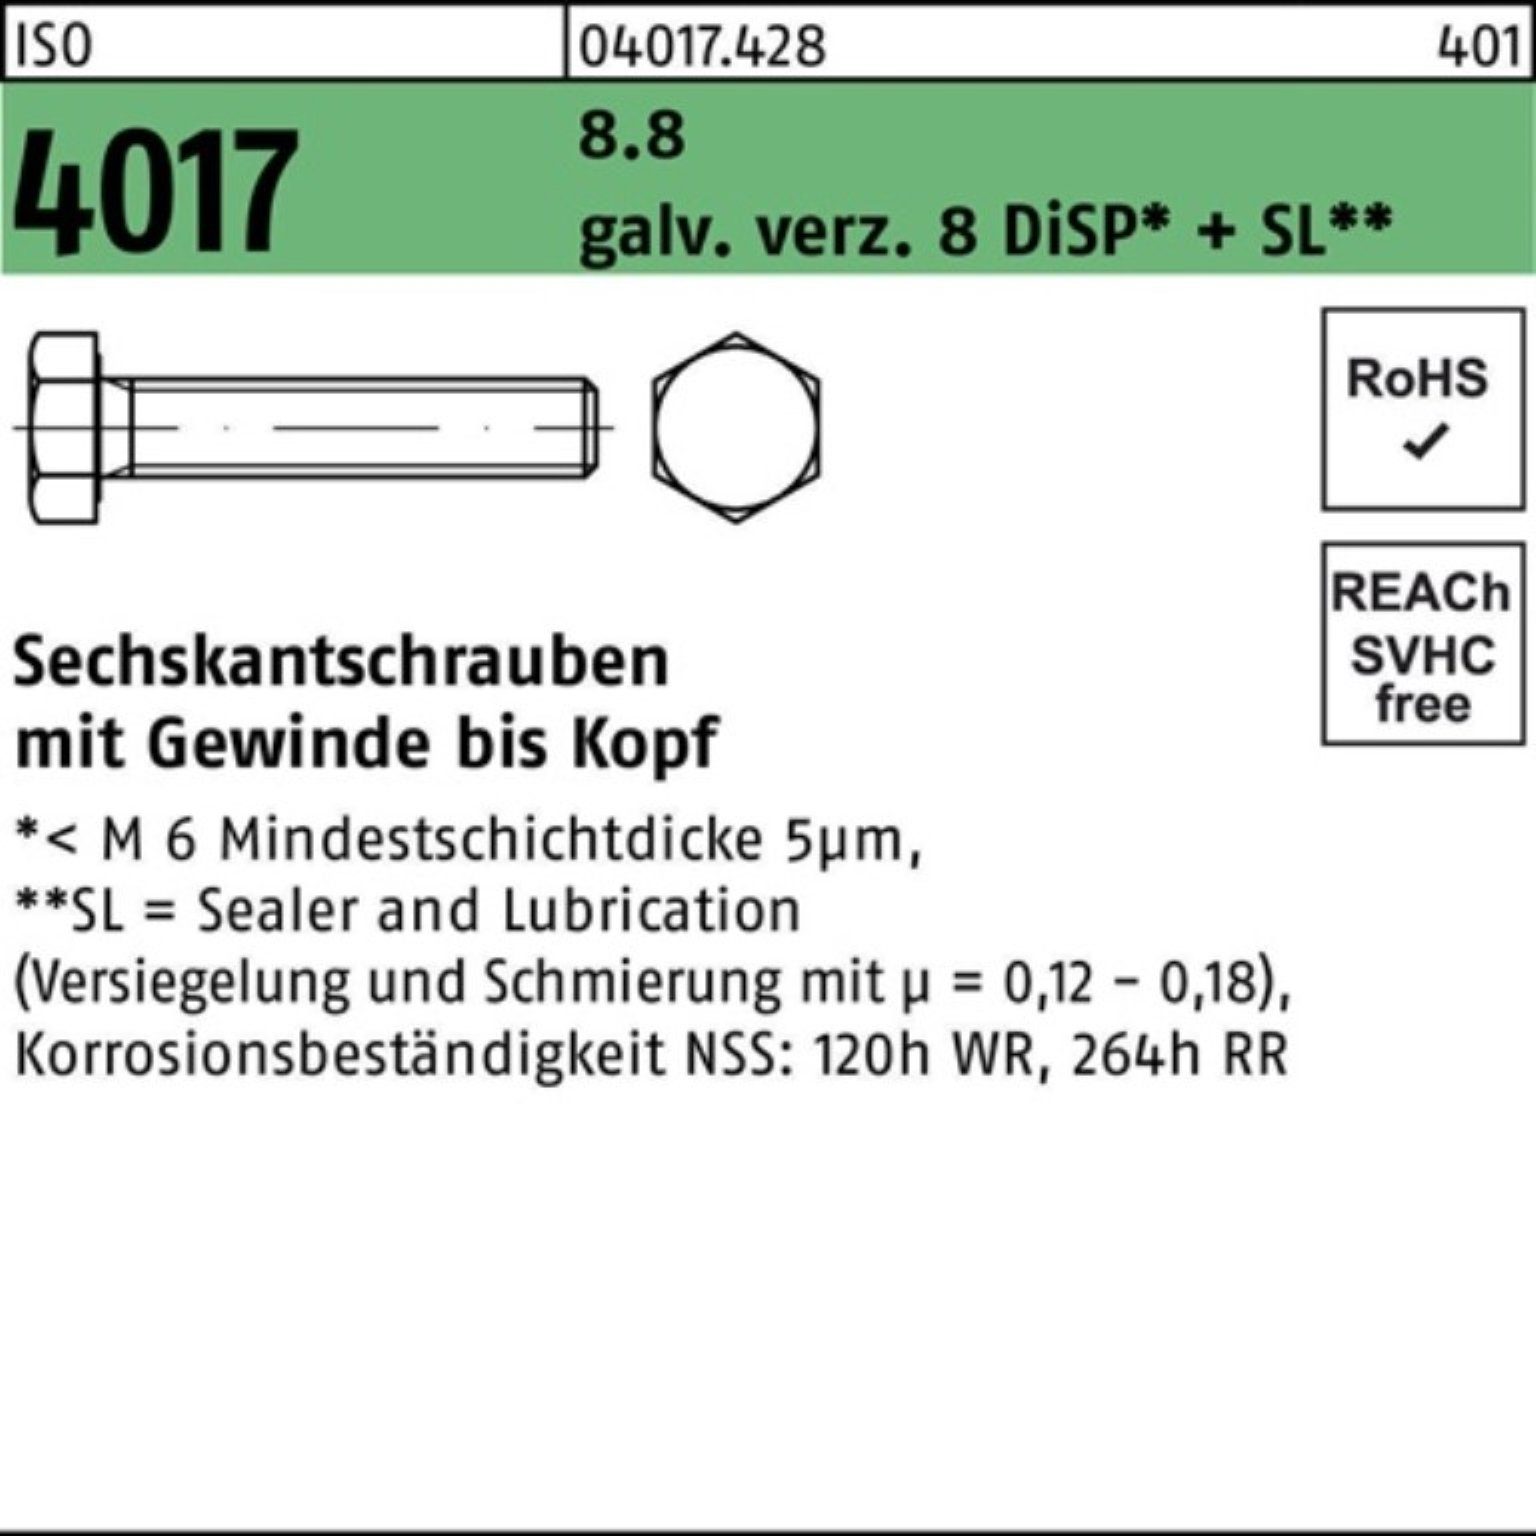 galv.verz. 500er VG Sechskantschraube Sechskantschraube ISO Pack DiSP+ Bufab 10 M4x 4017 8 8.8